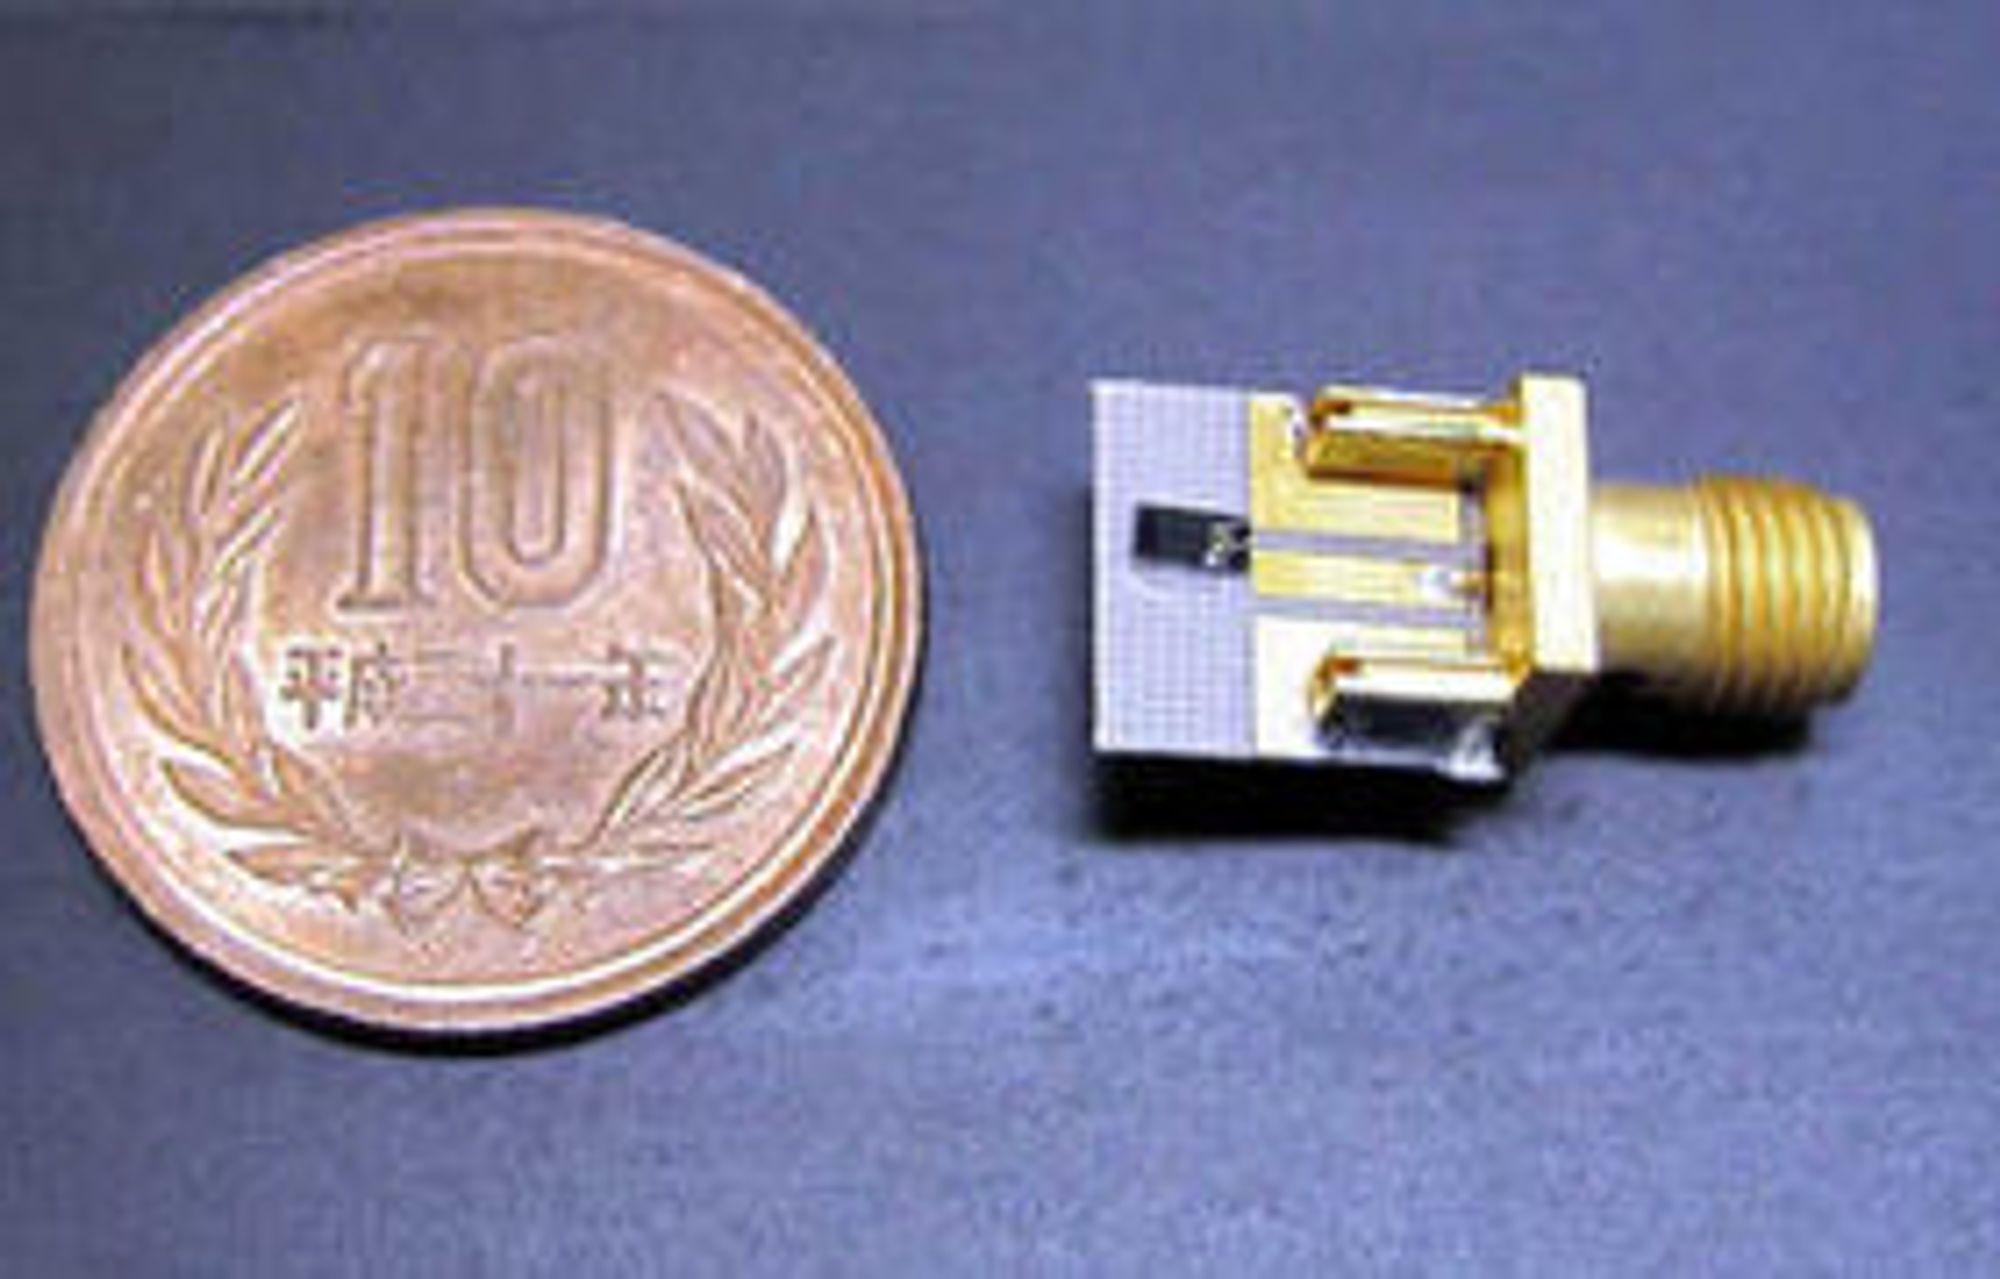 Dioden omtalt i artikkelen er en videreutvikling av den noe større (1,5 x 3,0 mm) dioden på bildet, som i fjor høst ble demonstrert av ROHM og Osaka University. Med denne dioden greide man å oppnå trådløse dataoverføring med en hastighet på 1,5 gigabit per sekund.